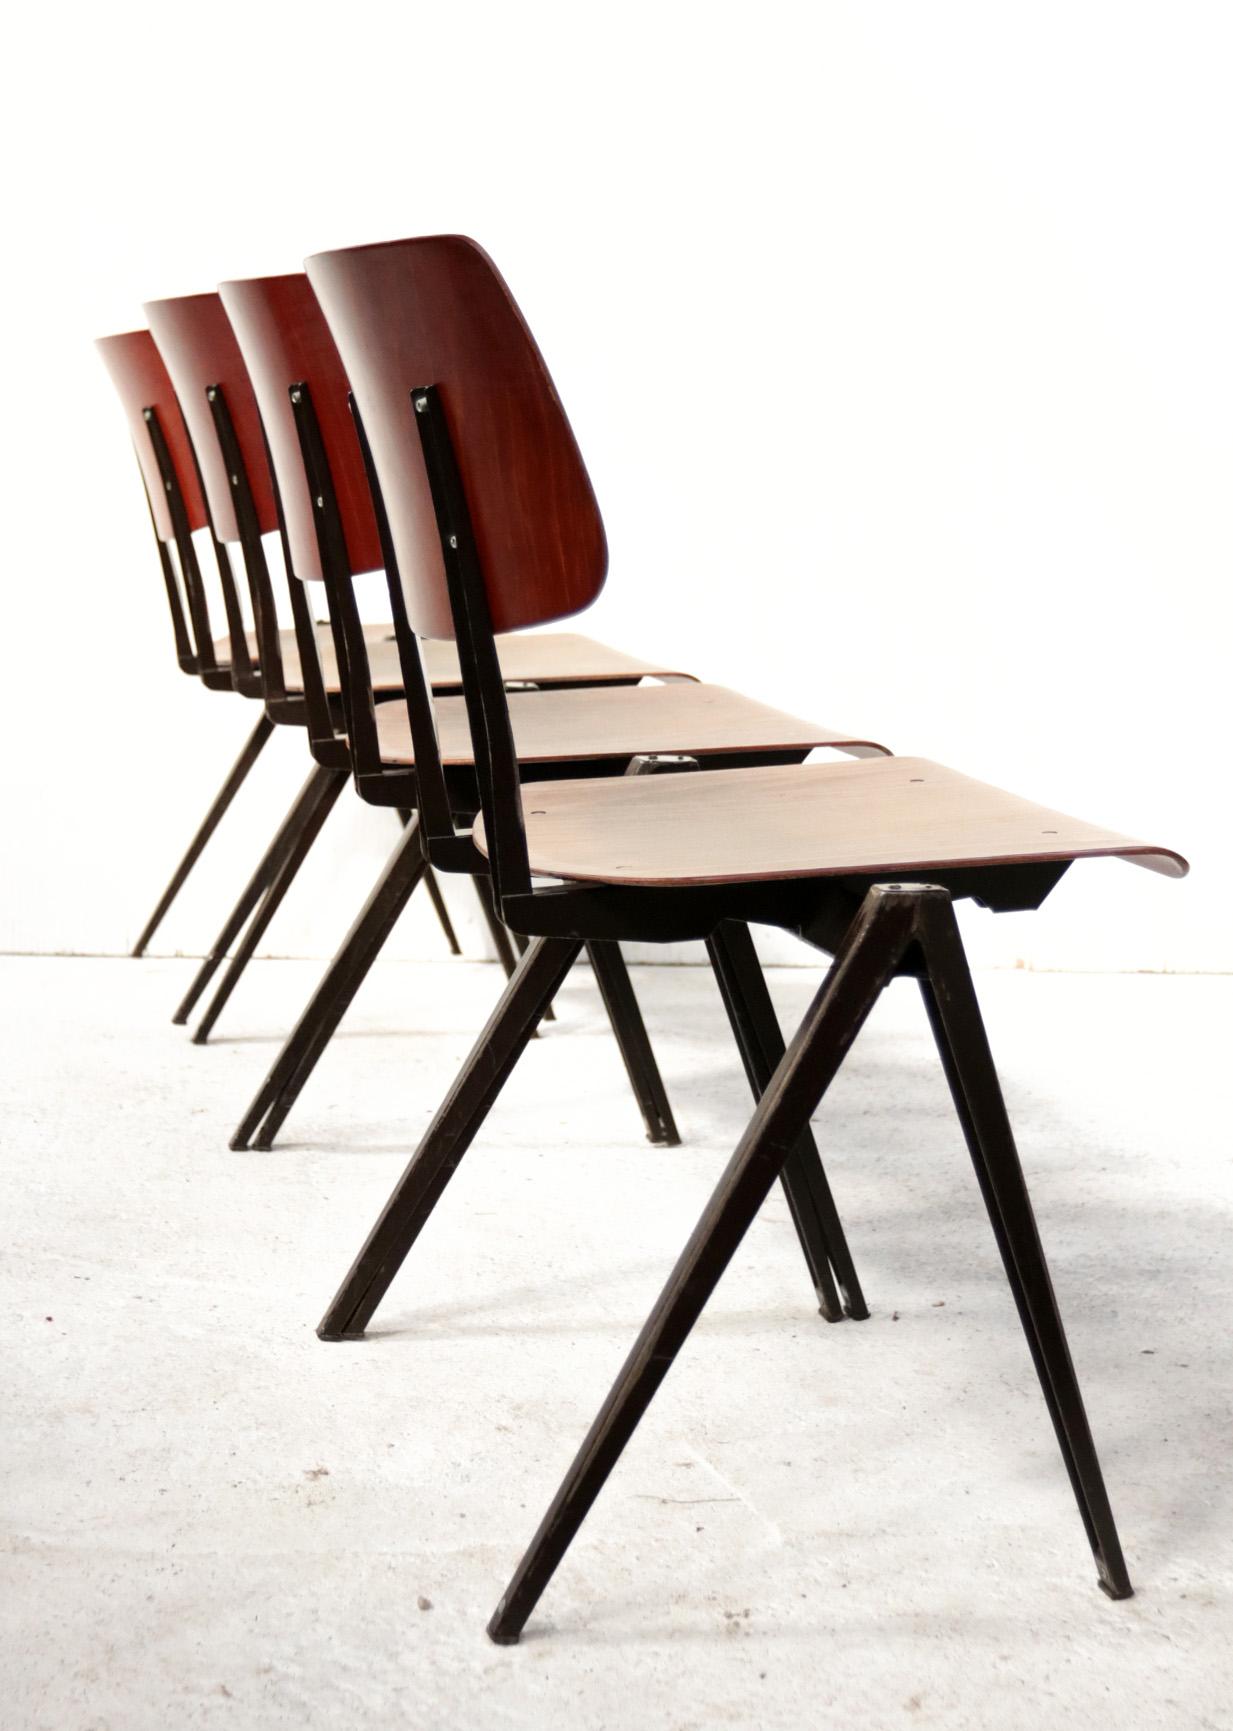 Belle série de chaises d'école originales S21 empilables et commutables fabriquées par Galvanitas dans les années 60 et 70 dans le style des designs de Friso Kramer, Wim Rietveld et Jean Prouvé.
Ce qui rend ces sièges très spéciaux, c'est la façon